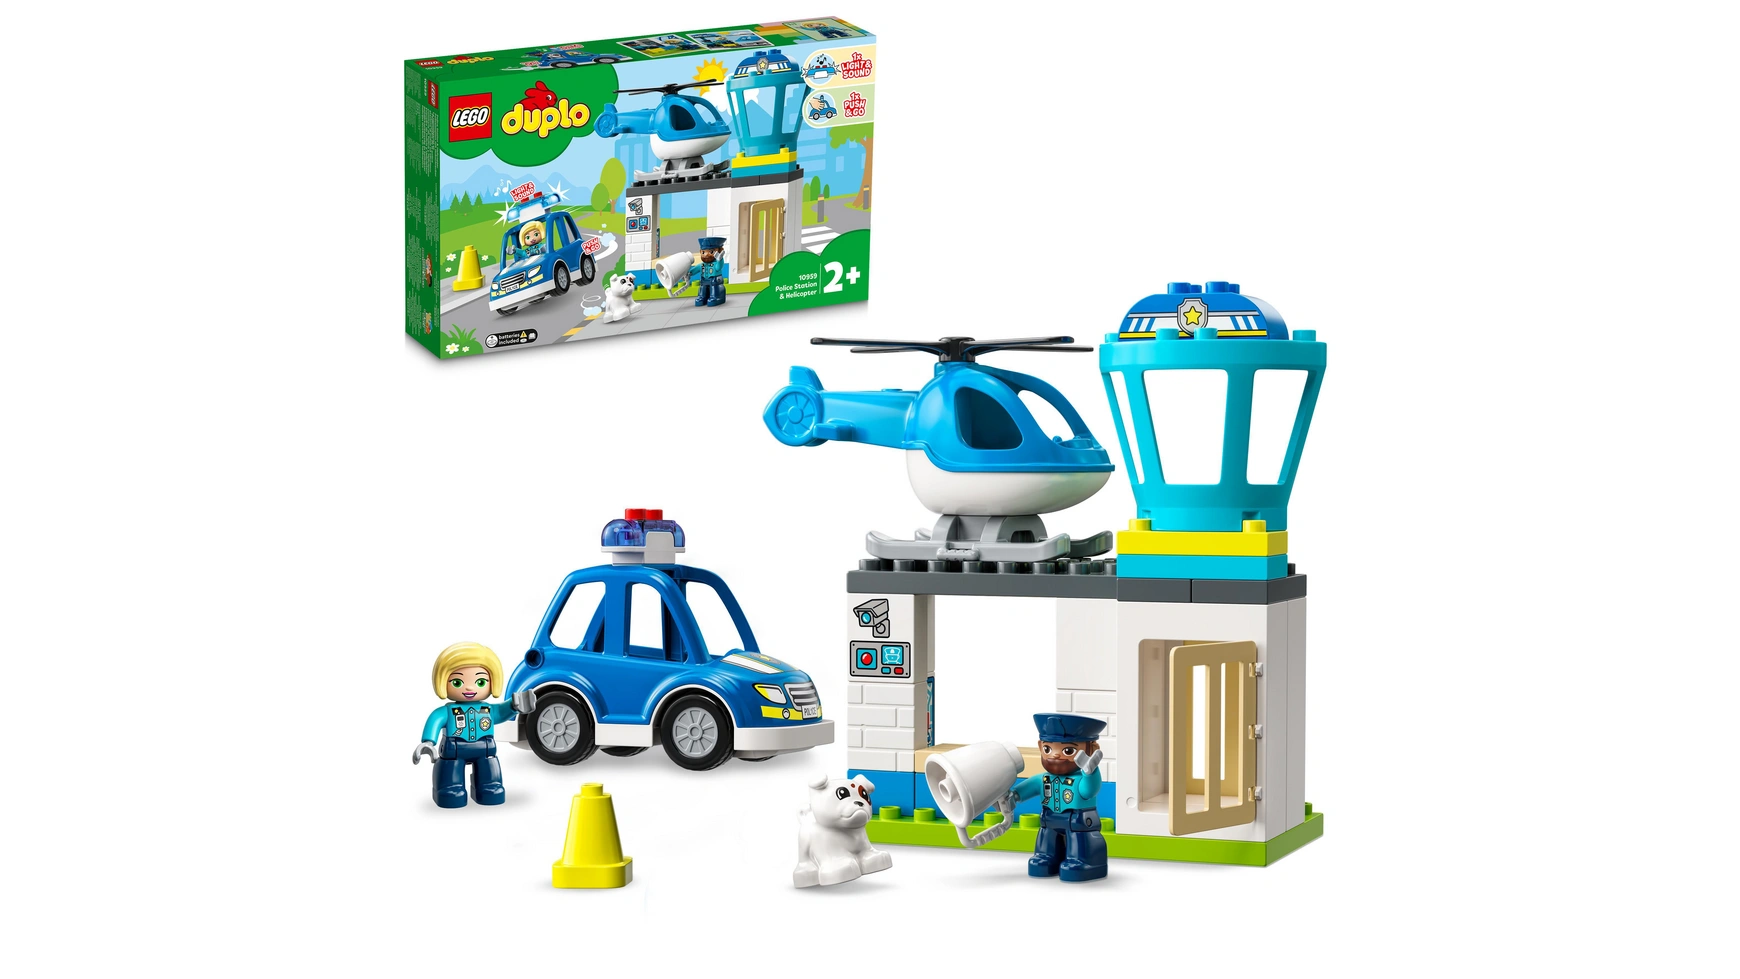 Lego DUPLO Полицейский участок с вертолетом, полицейская игрушка lego duplo моя первая увлекательная развивающая игрушка для сборки для детей от 1 5 лет и старше